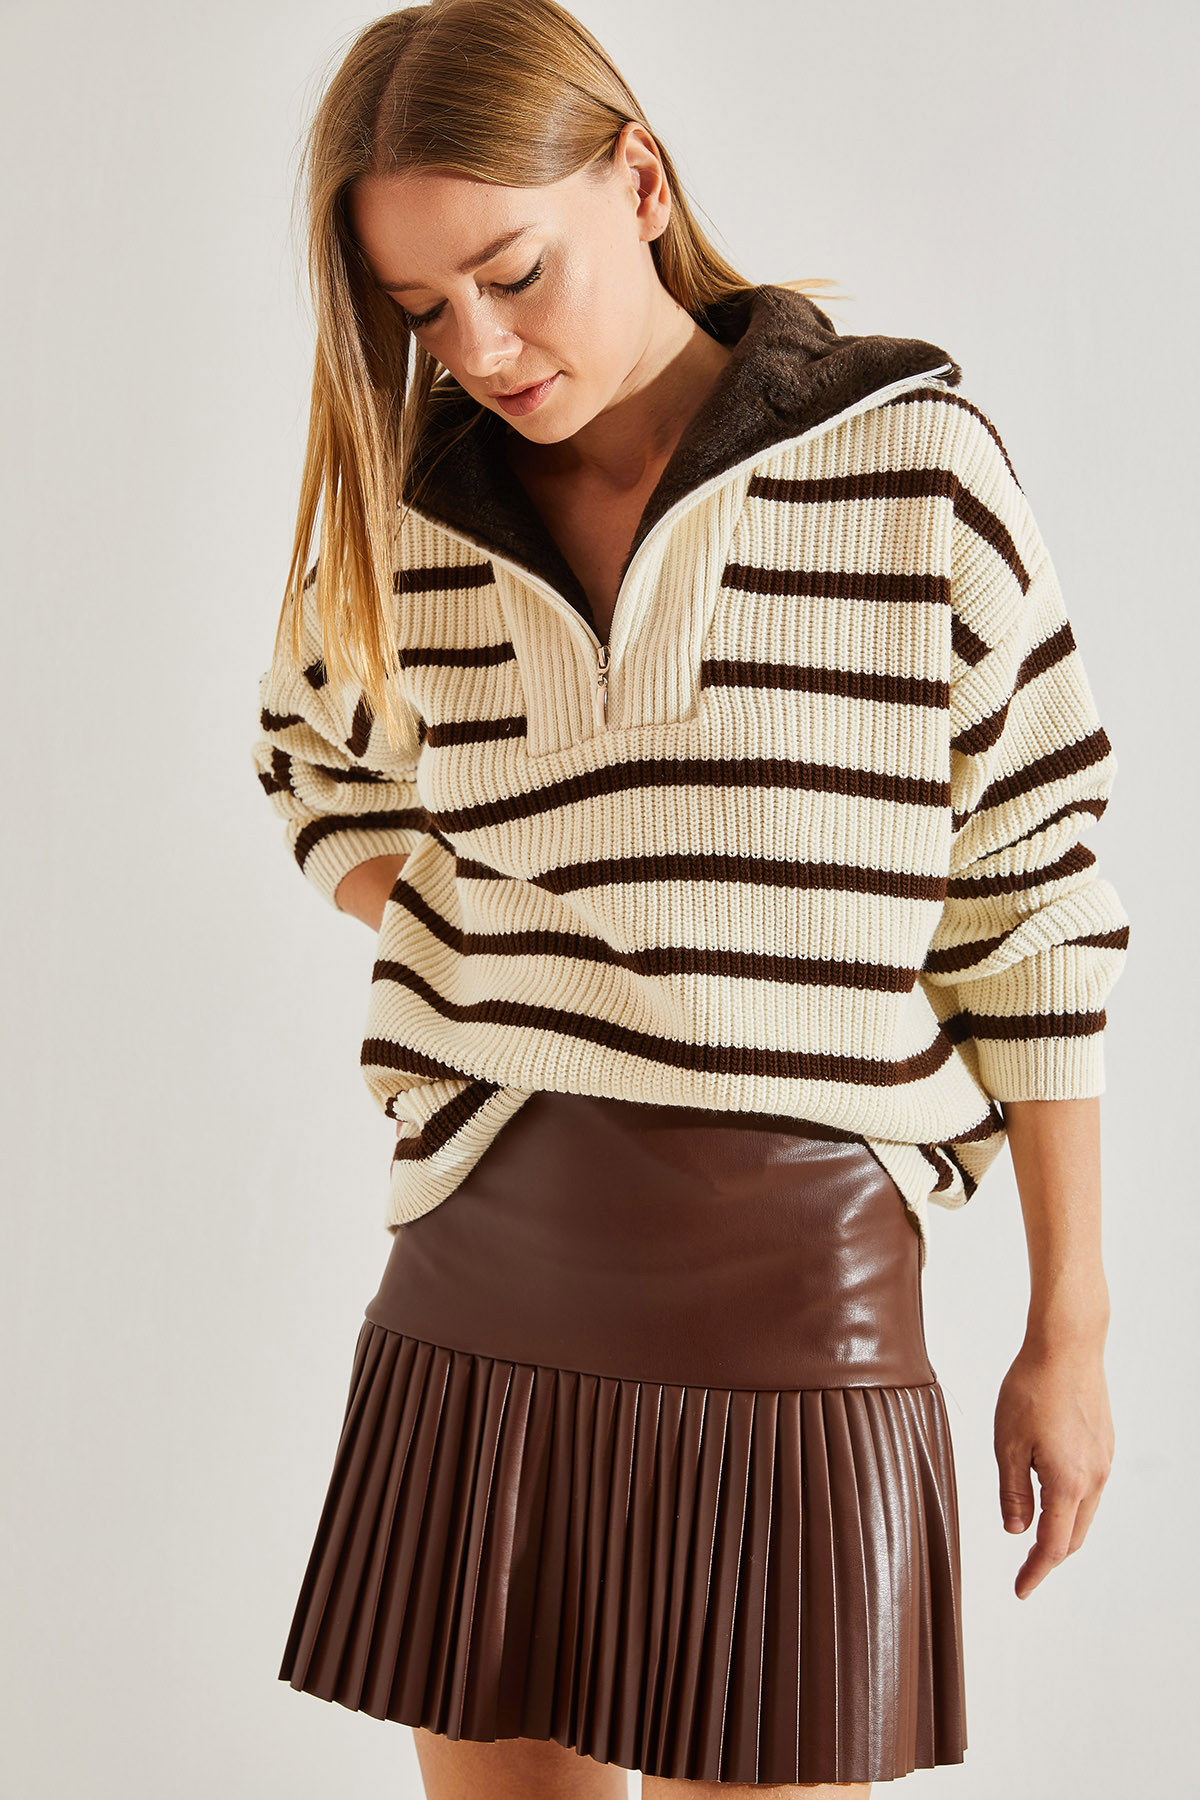 Levně Bianco Lucci Women's Neck Shearling Fur Striped Zipper Knitwear Sweater